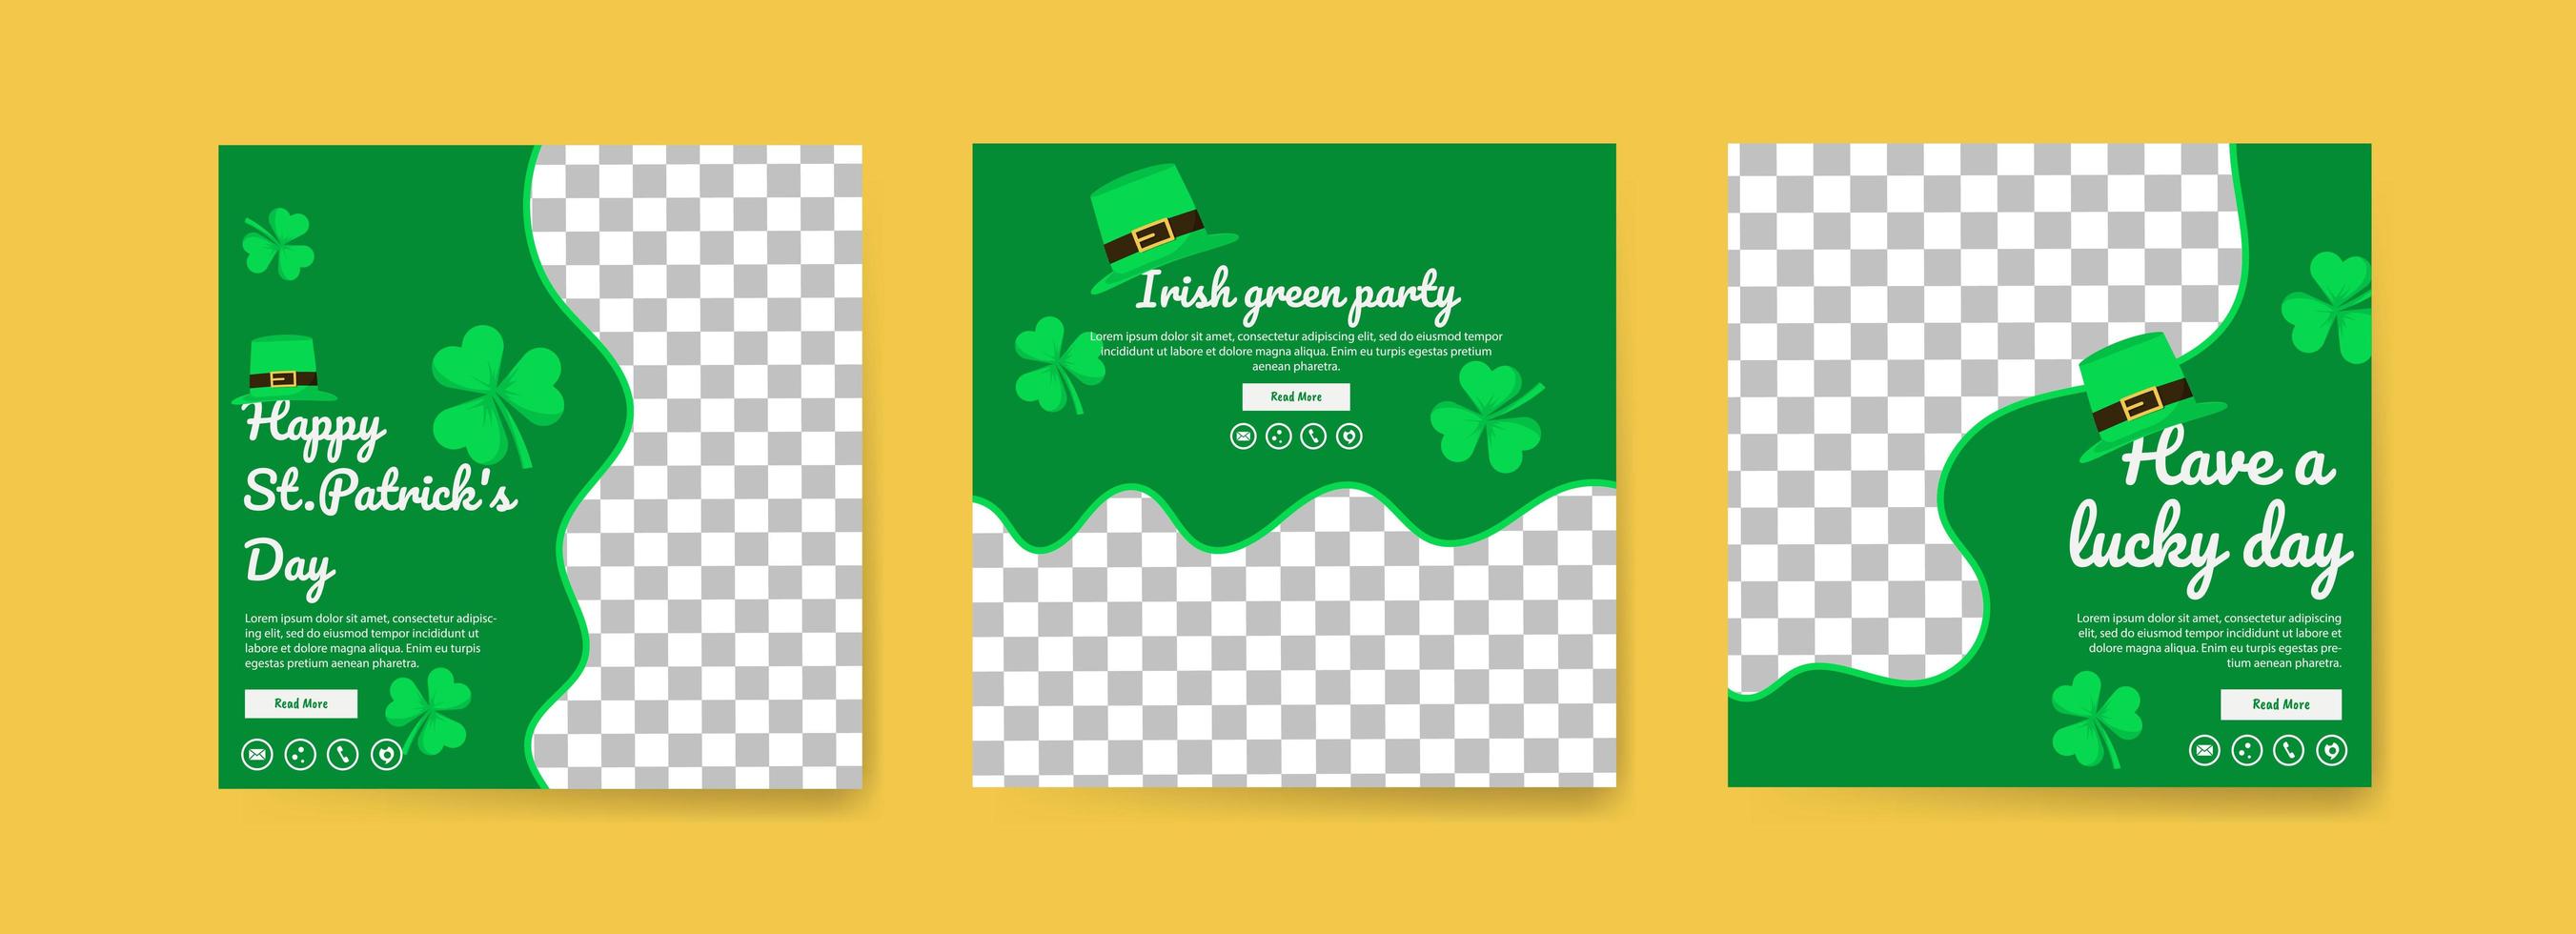 collection de modèles de publications sur les réseaux sociaux pour la Saint-Patrick. célébrez la fête de la saint patrick. passez une bonne journée. parti vert irlandais. vecteur